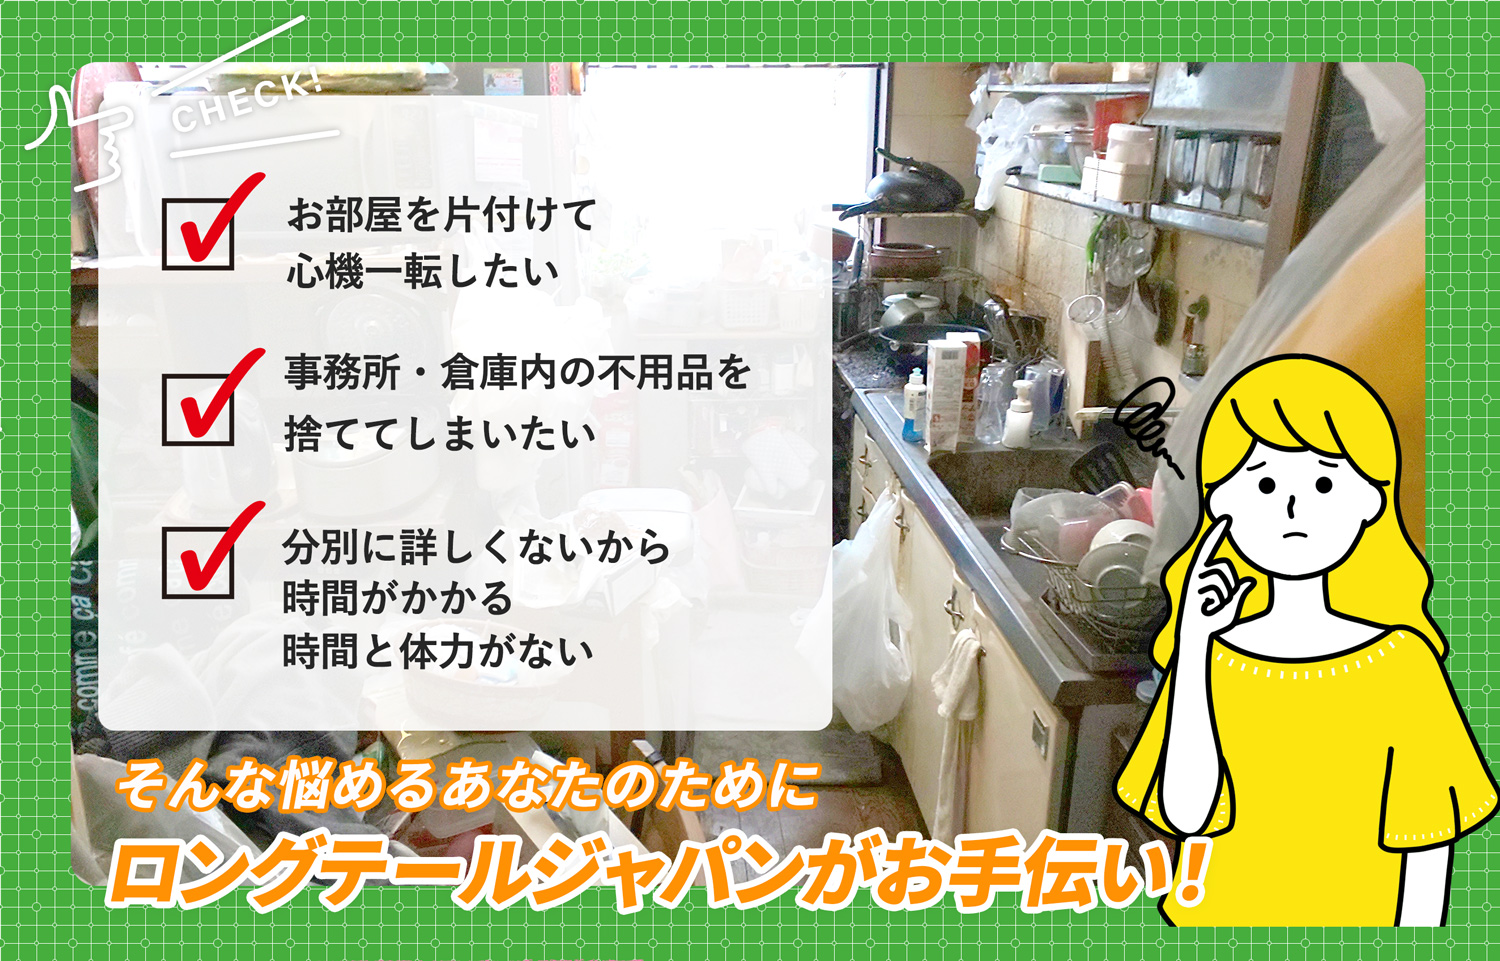 松本市でお部屋の中から店舗、事務所、倉庫まで自分達で片付けられない場合はお部屋の片付け隊がやらせていただきます。